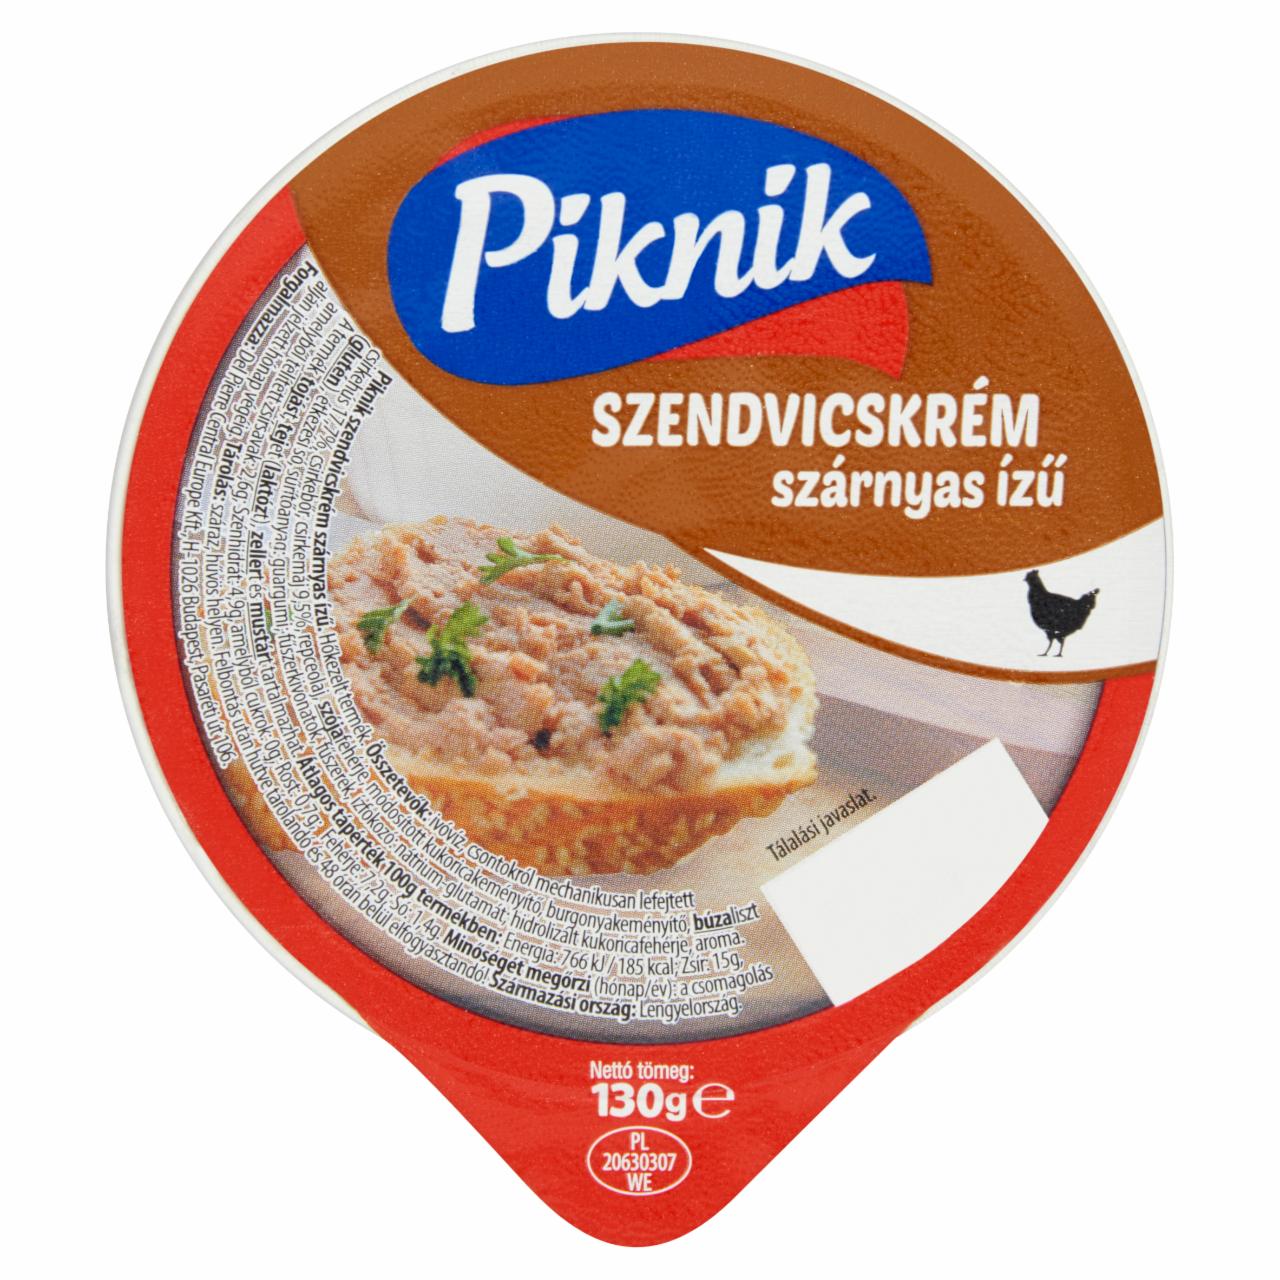 Képek - Piknik szárnyas ízű szendvicskrém 130 g